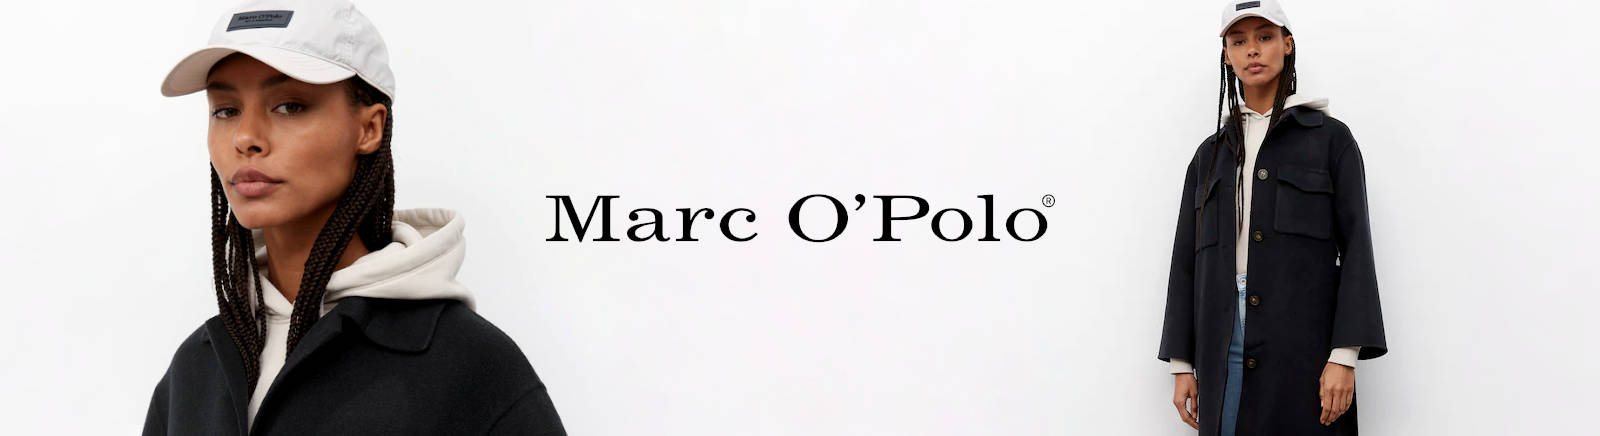 Juppen: Marc O'Polo Bootsschuhe Herren online shoppen